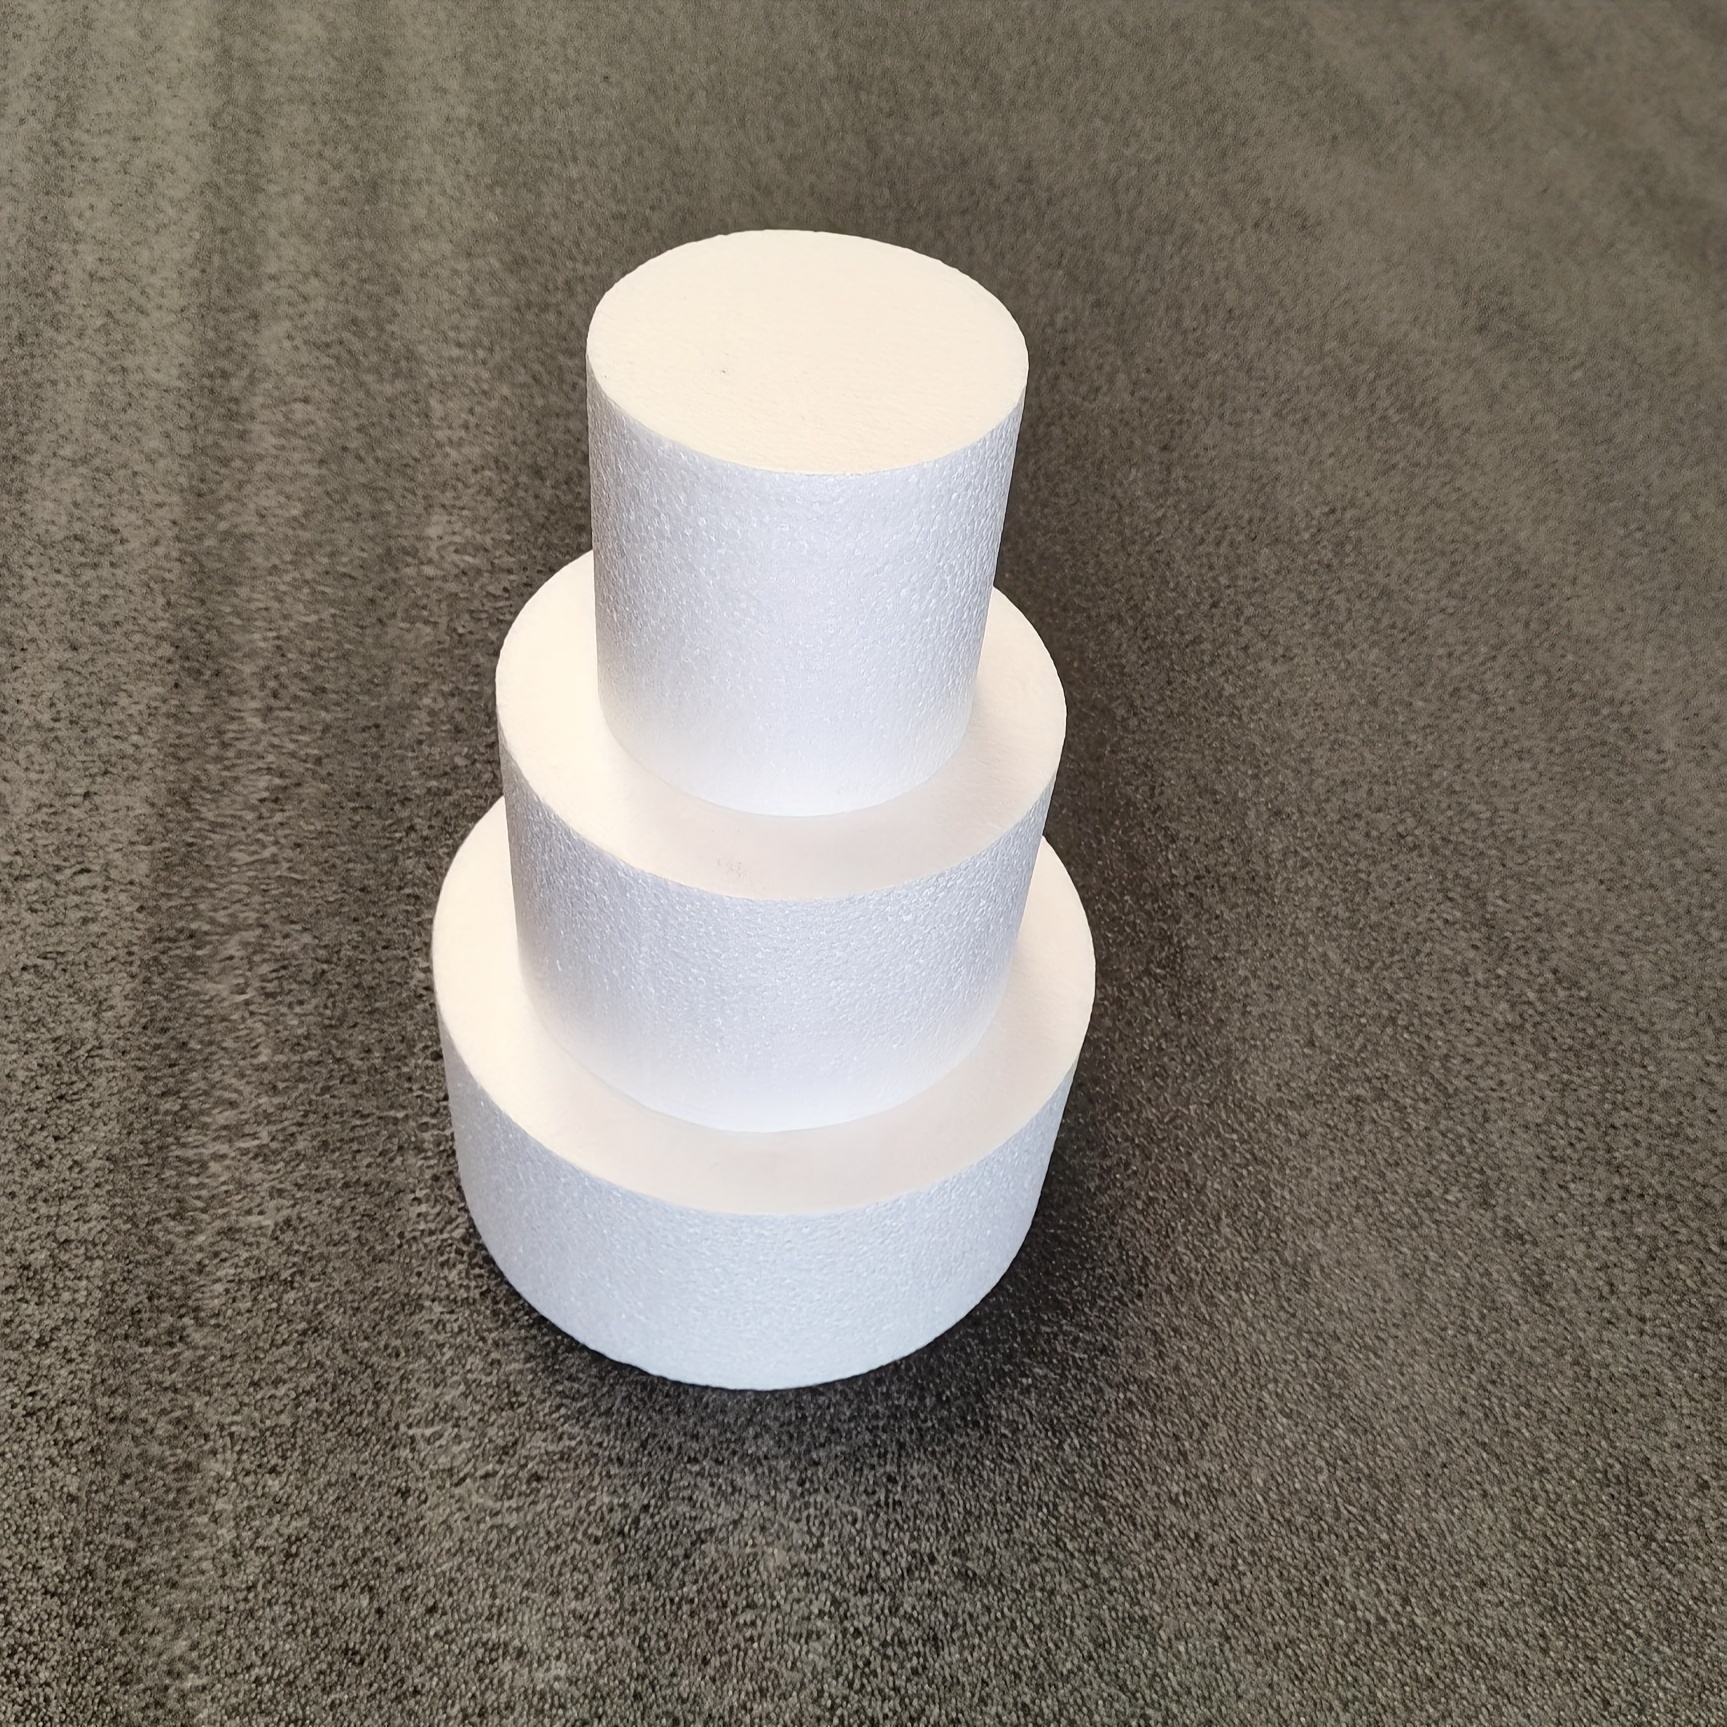 10pcs Cylinder Shape Polystyrene Styrofoam Foam for Modeling Craft 5 Sizes